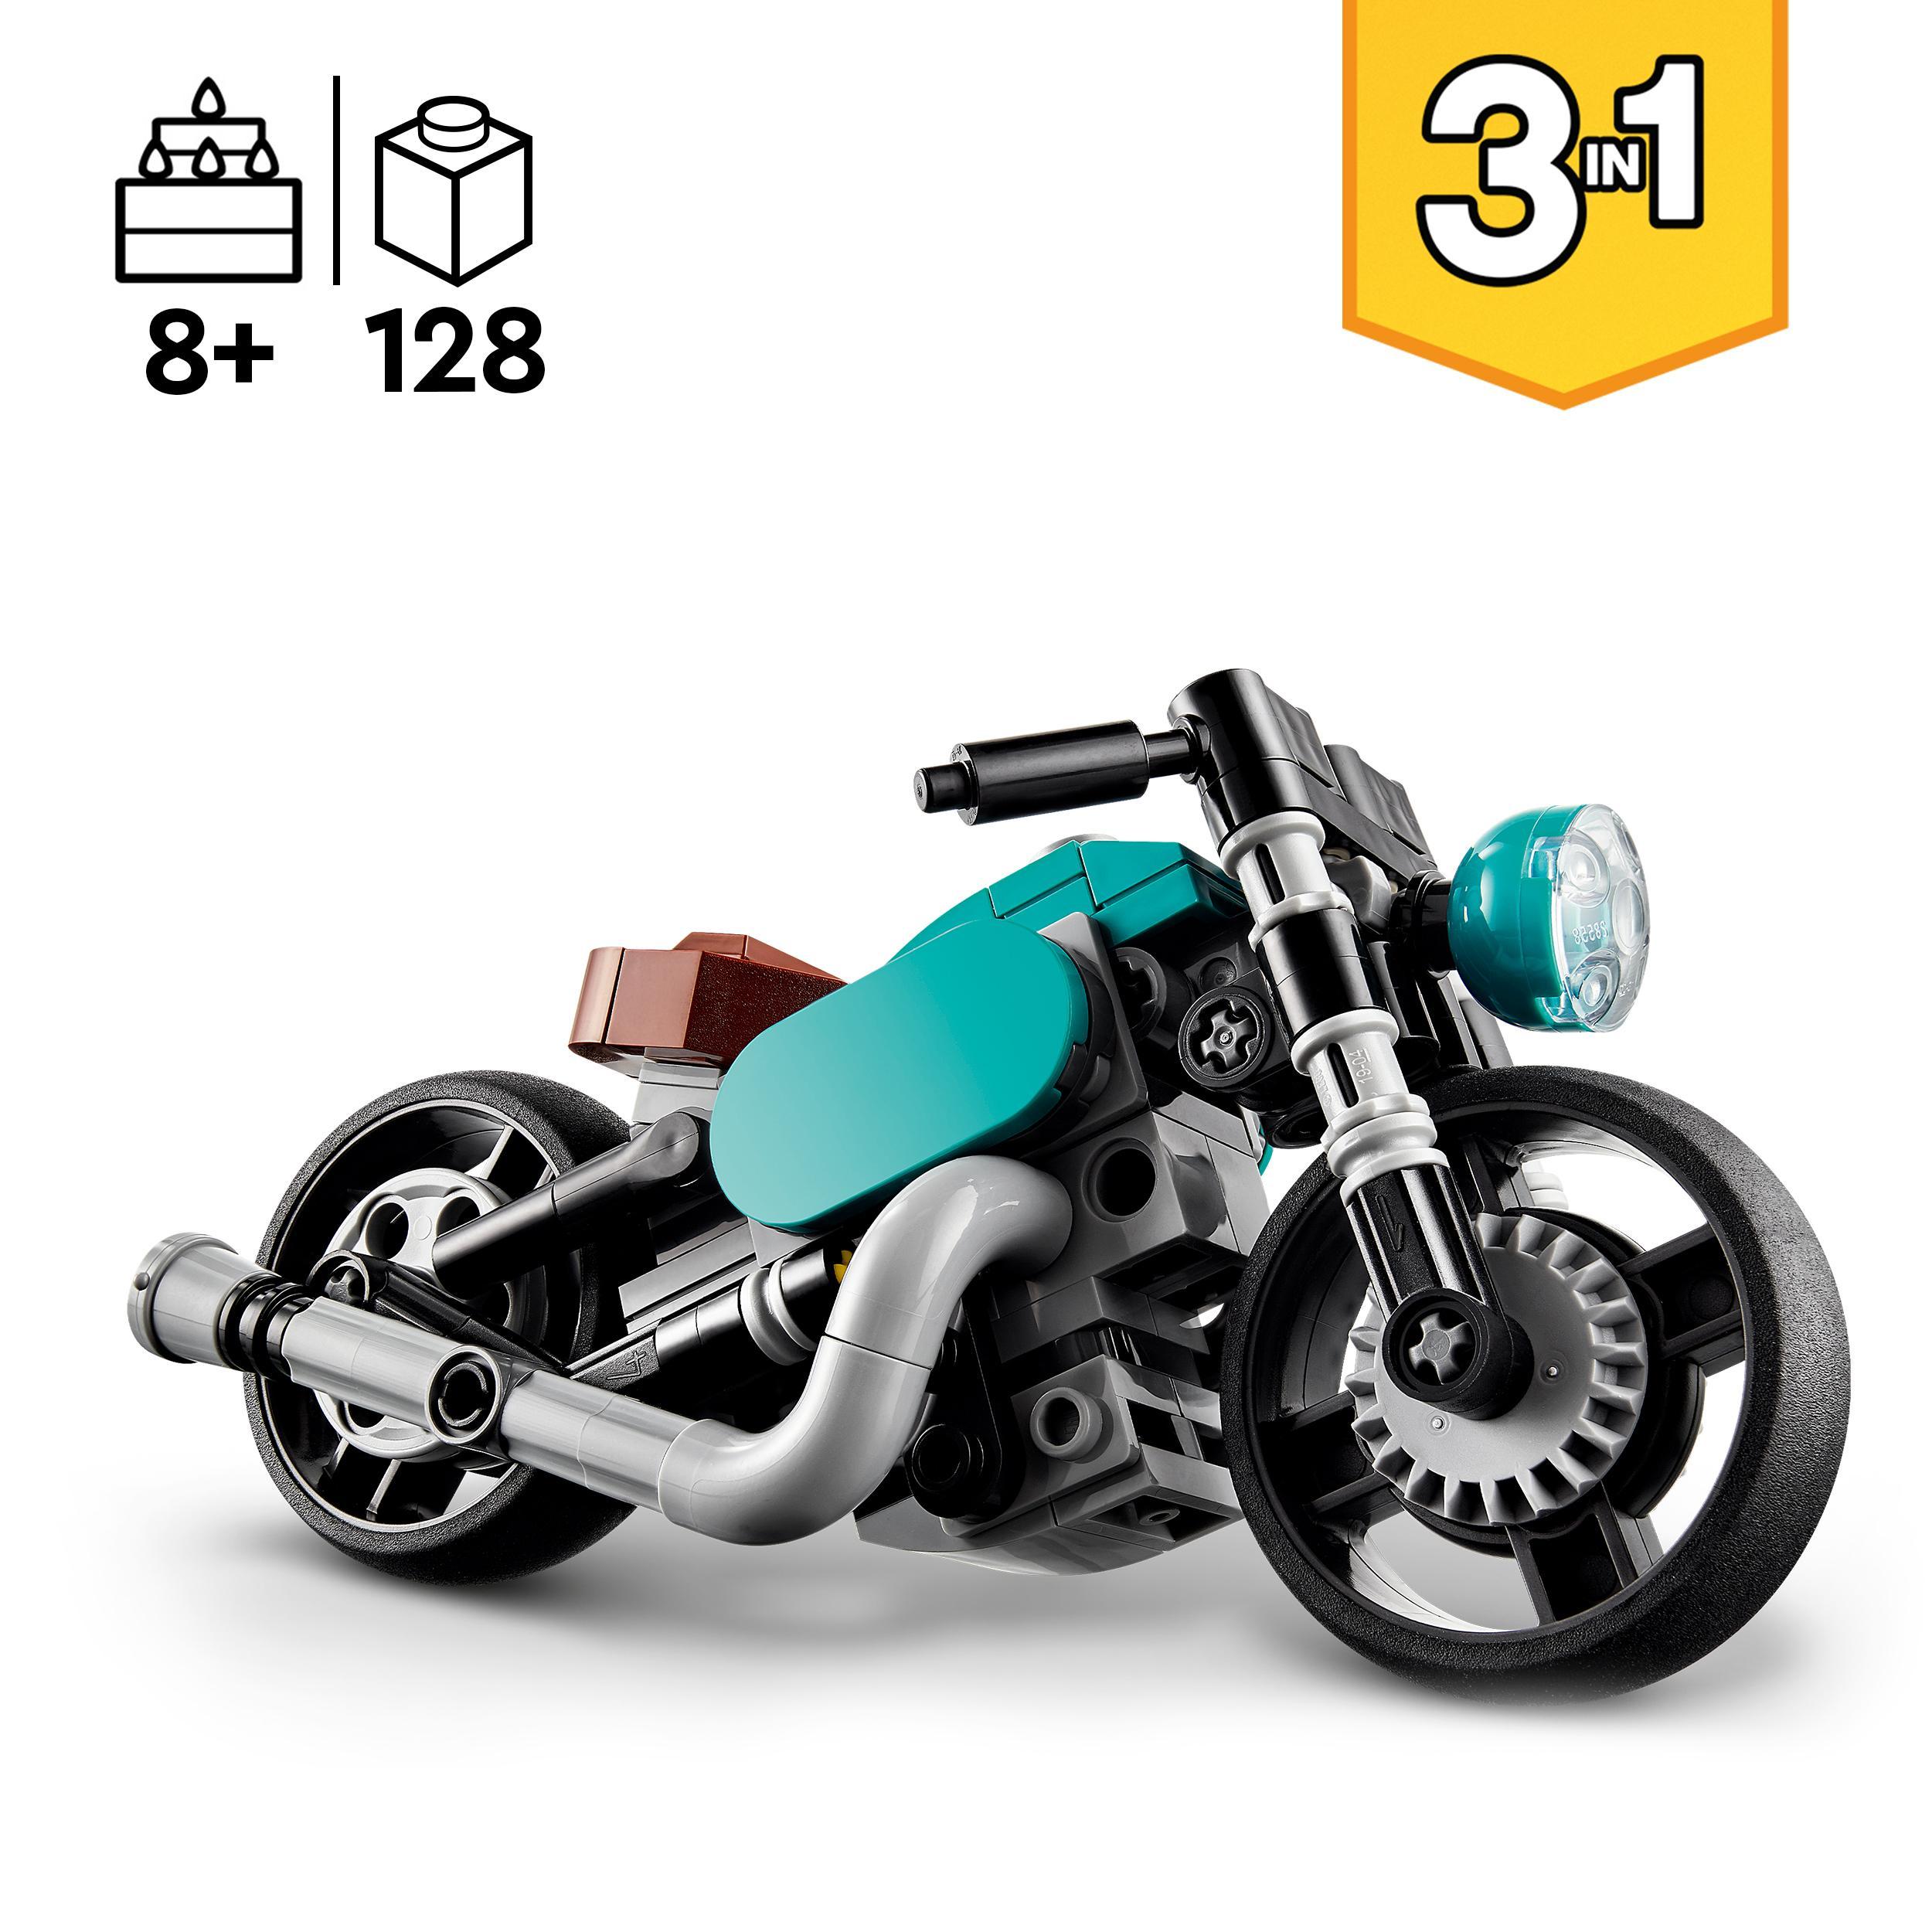 Lego creator 31135 motocicletta vintage, set 3 in 1 con moto giocattolo, road bike e dragster, giochi creativi per bambini - LEGO CREATOR